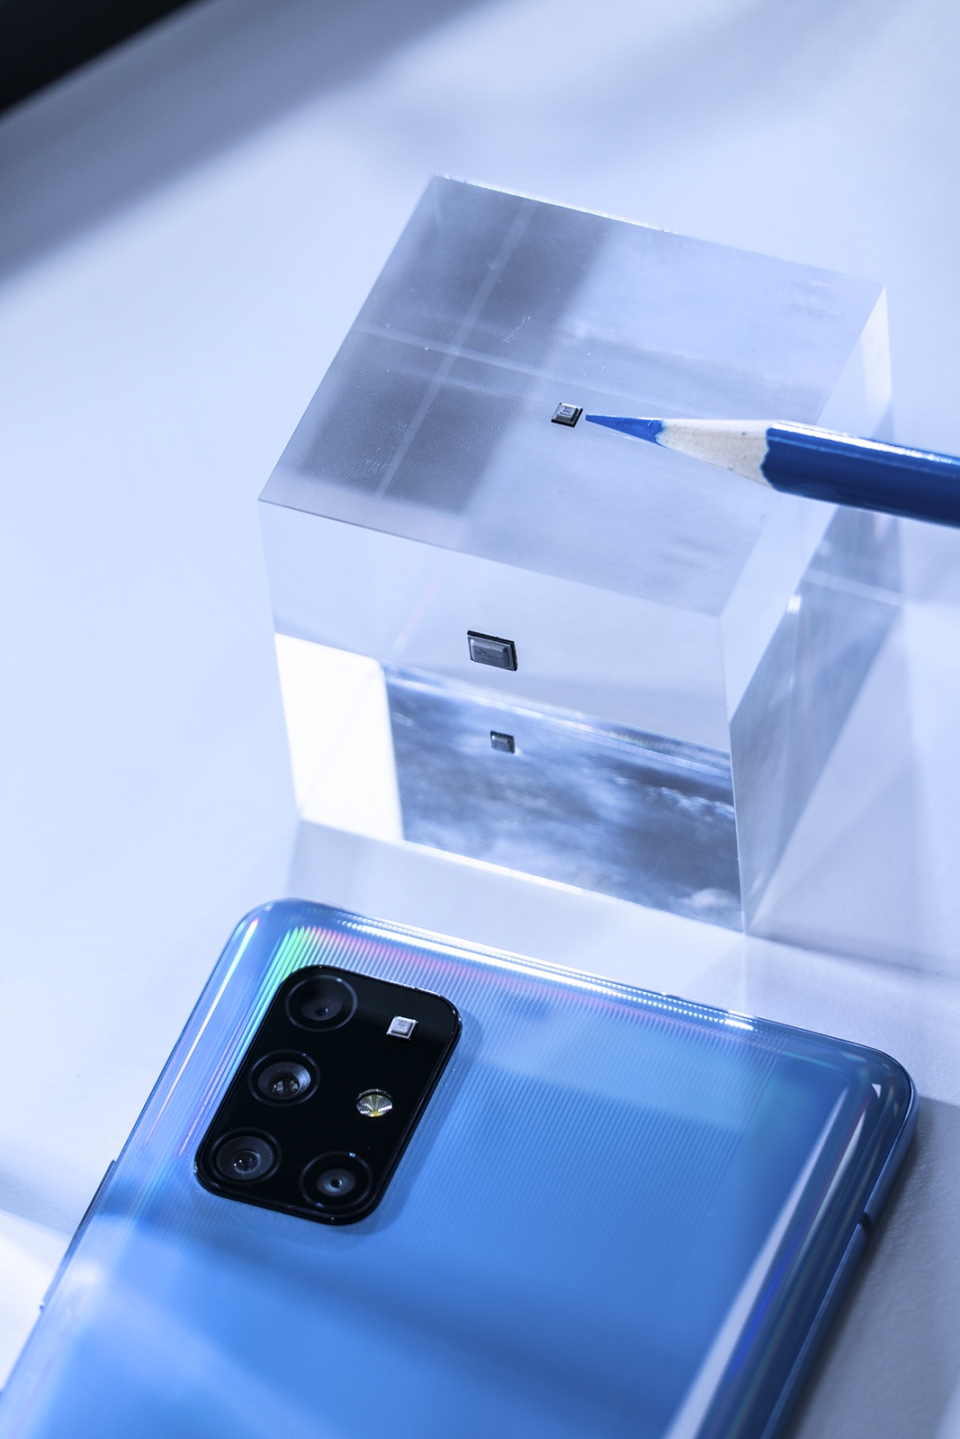 SK텔레콤은 자회사 IDQ, 삼성전자, 국내 강소기업들과 손잡고 세계 최초로 양자난수생성 칩셋을 탑재한 5G 스마트폰을 출시하는데 성공했다. (SK텔레콤 제공)/그린포스트코리아